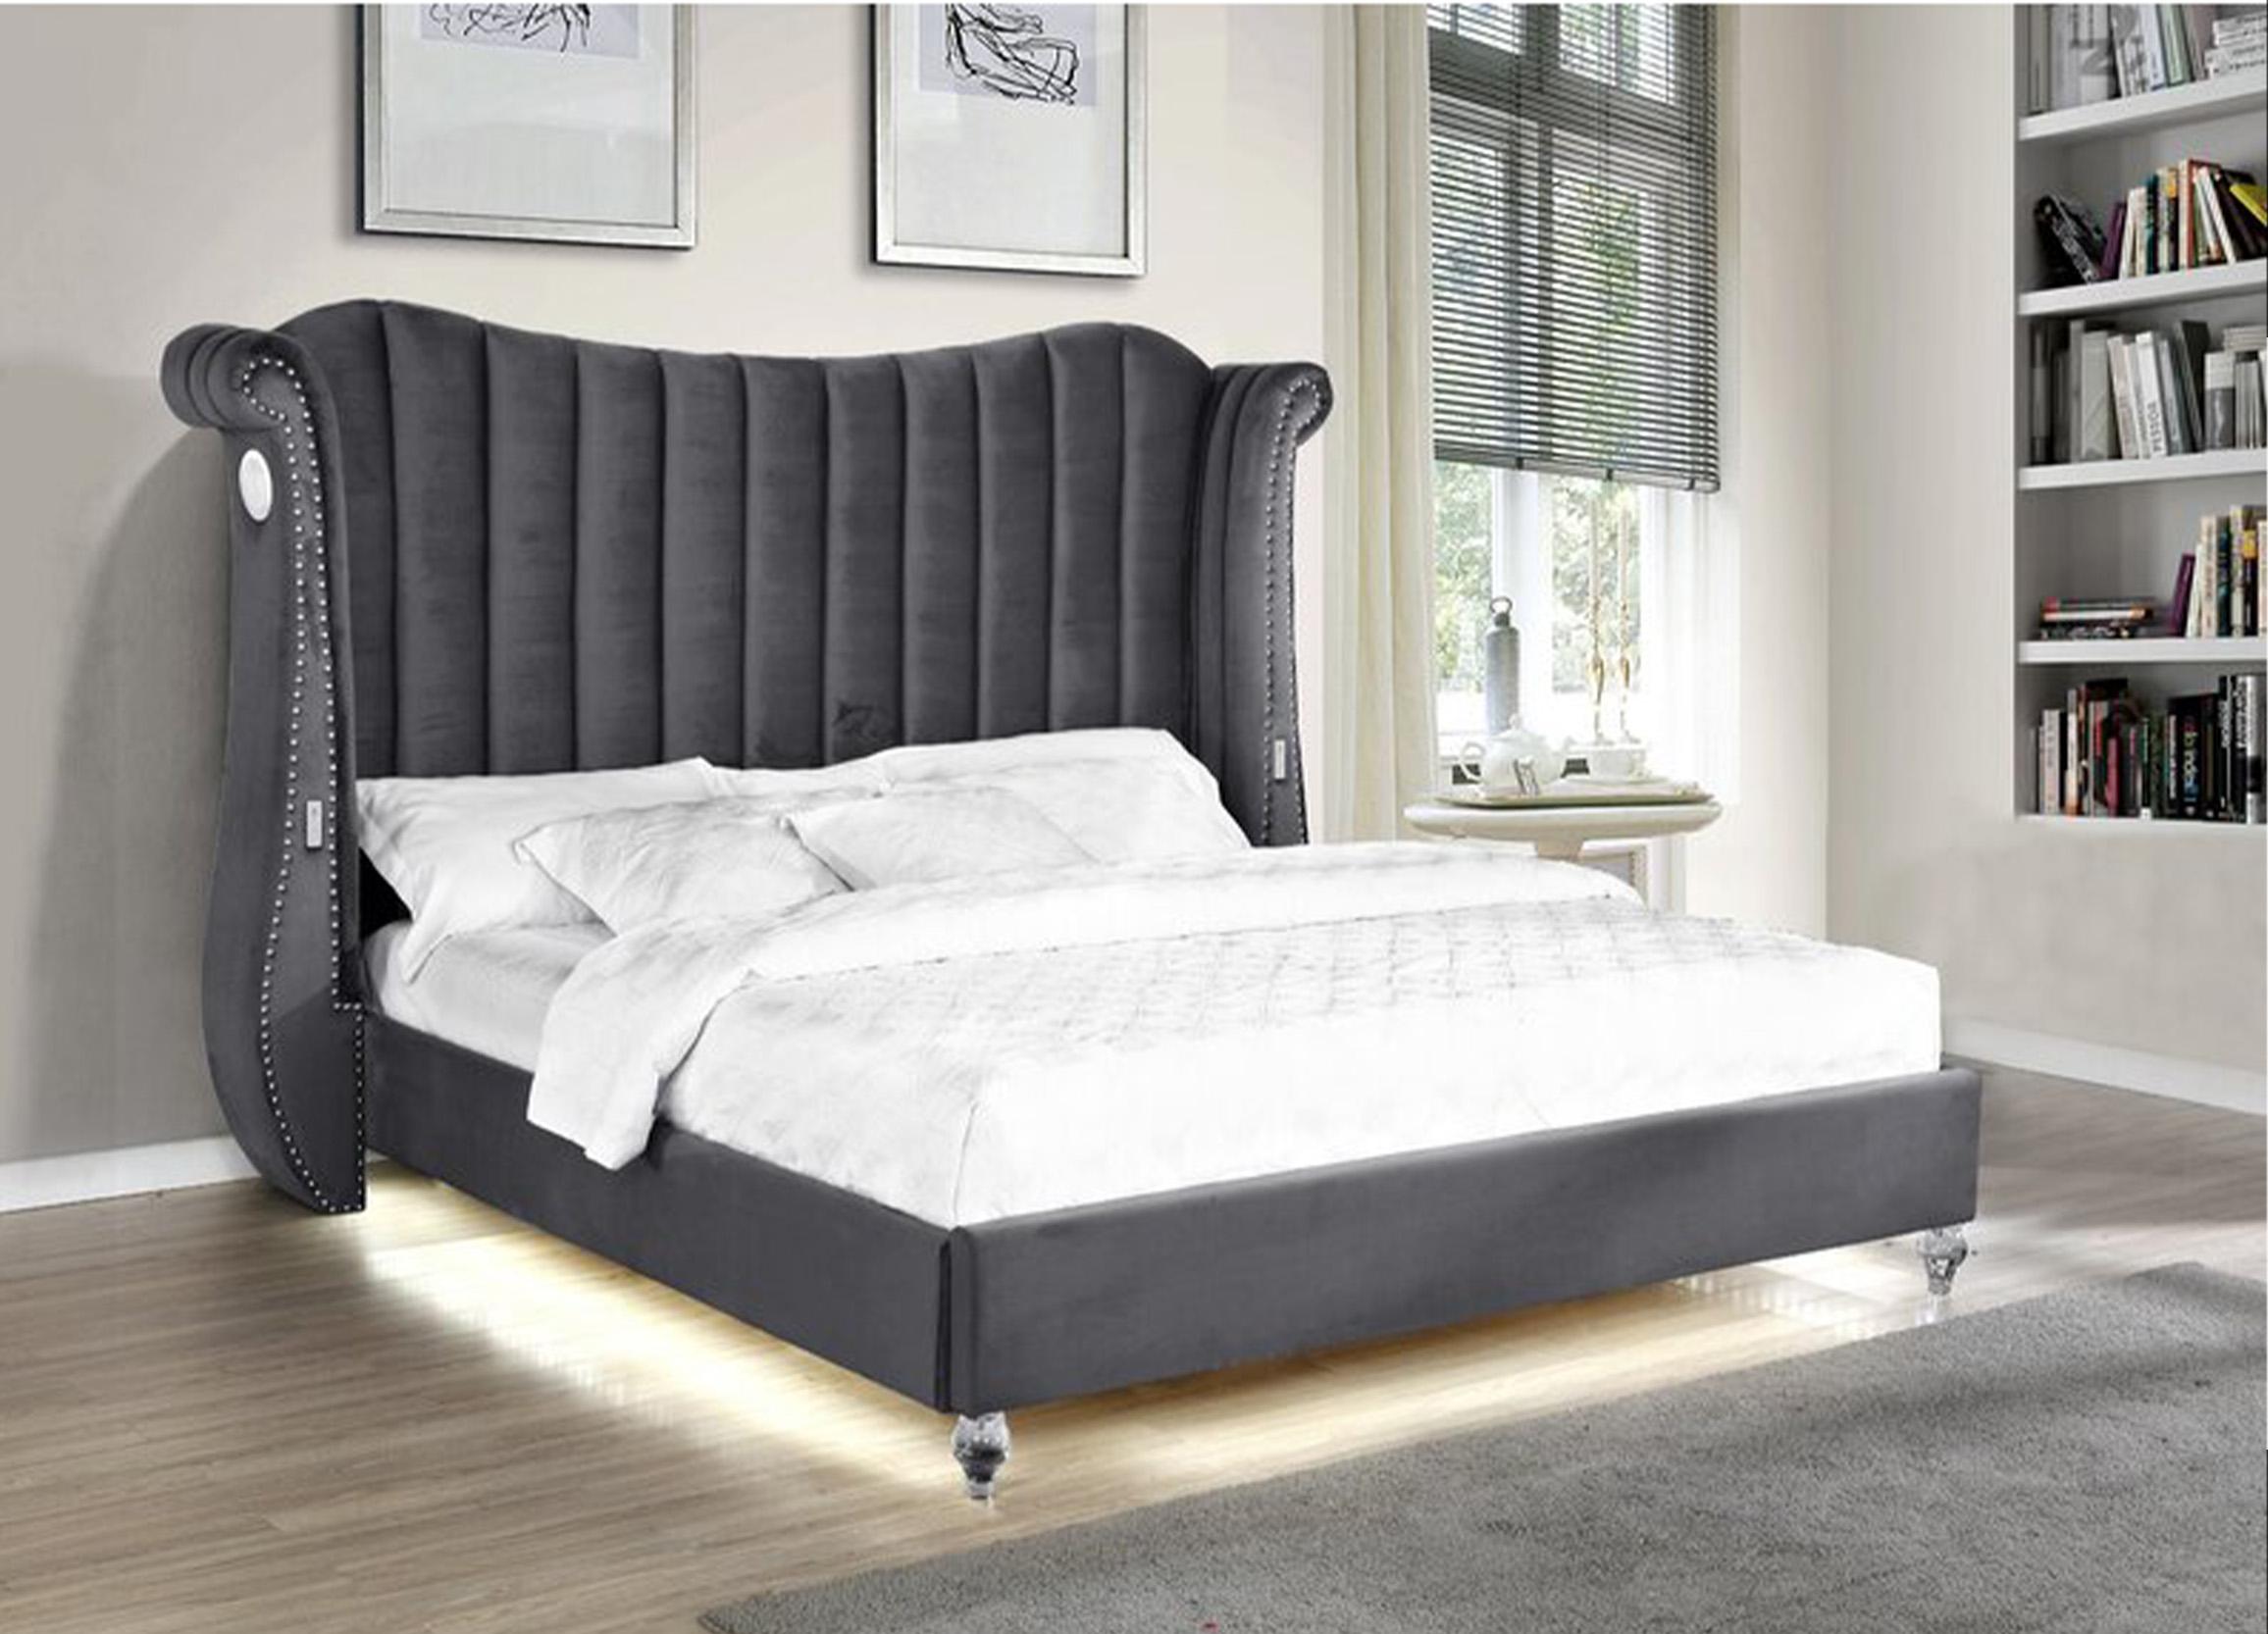 

    
Galaxy Home Furniture TULIP GR Platform Bedroom Set Gray TULIP-GR-EK-NVS-4PC
